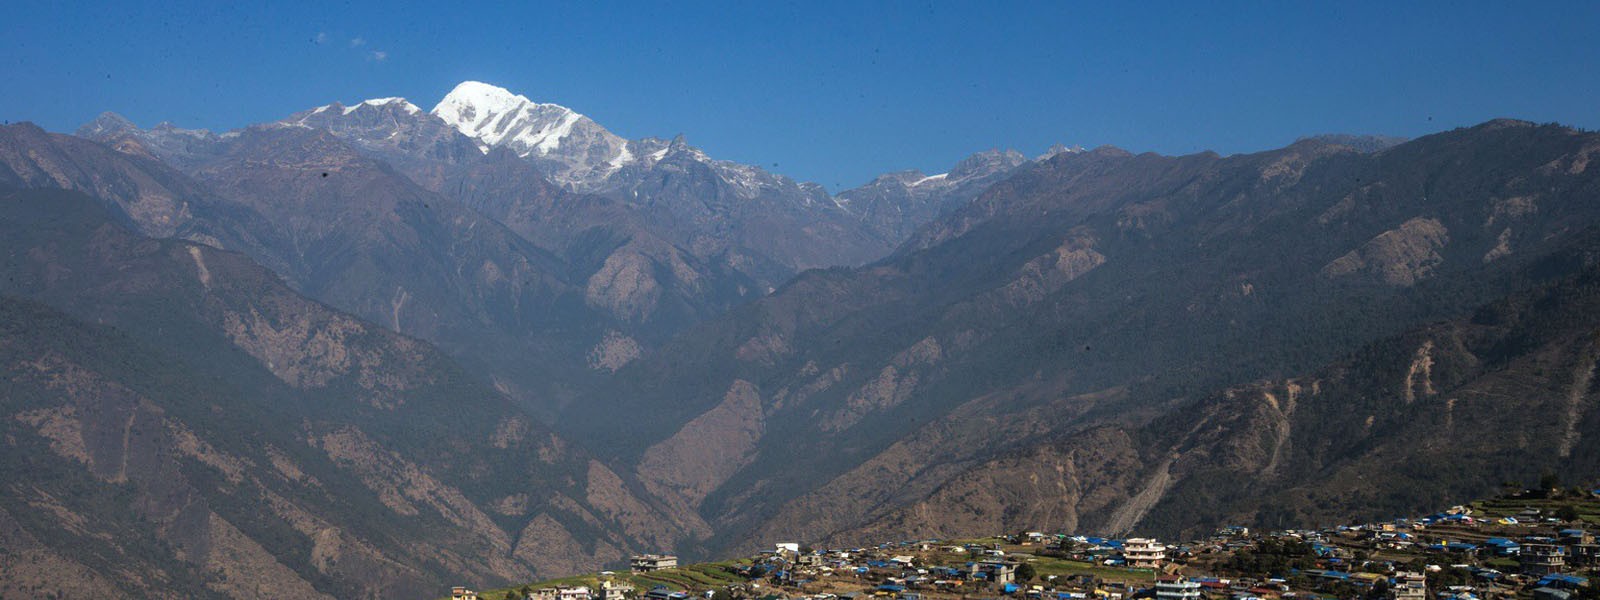 Lower Manaslu Trekking in Gorkha